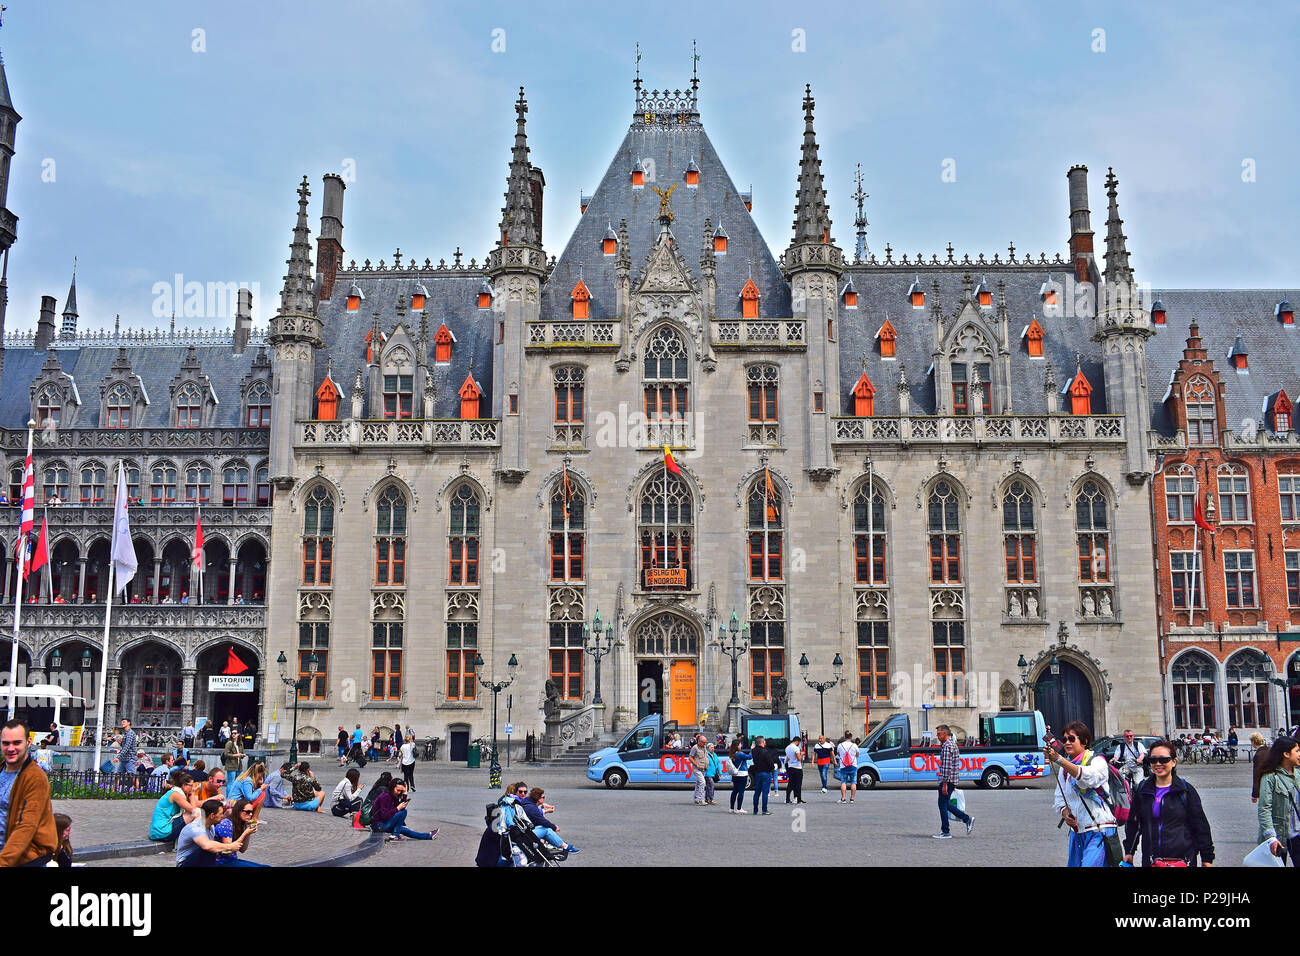 Il Provinciaal Hof (o Palazzo Provinciale) in Brugge anticamente era il luogo di incontro per il governo provinciale della Fiandra occidentale, Belgio Foto Stock